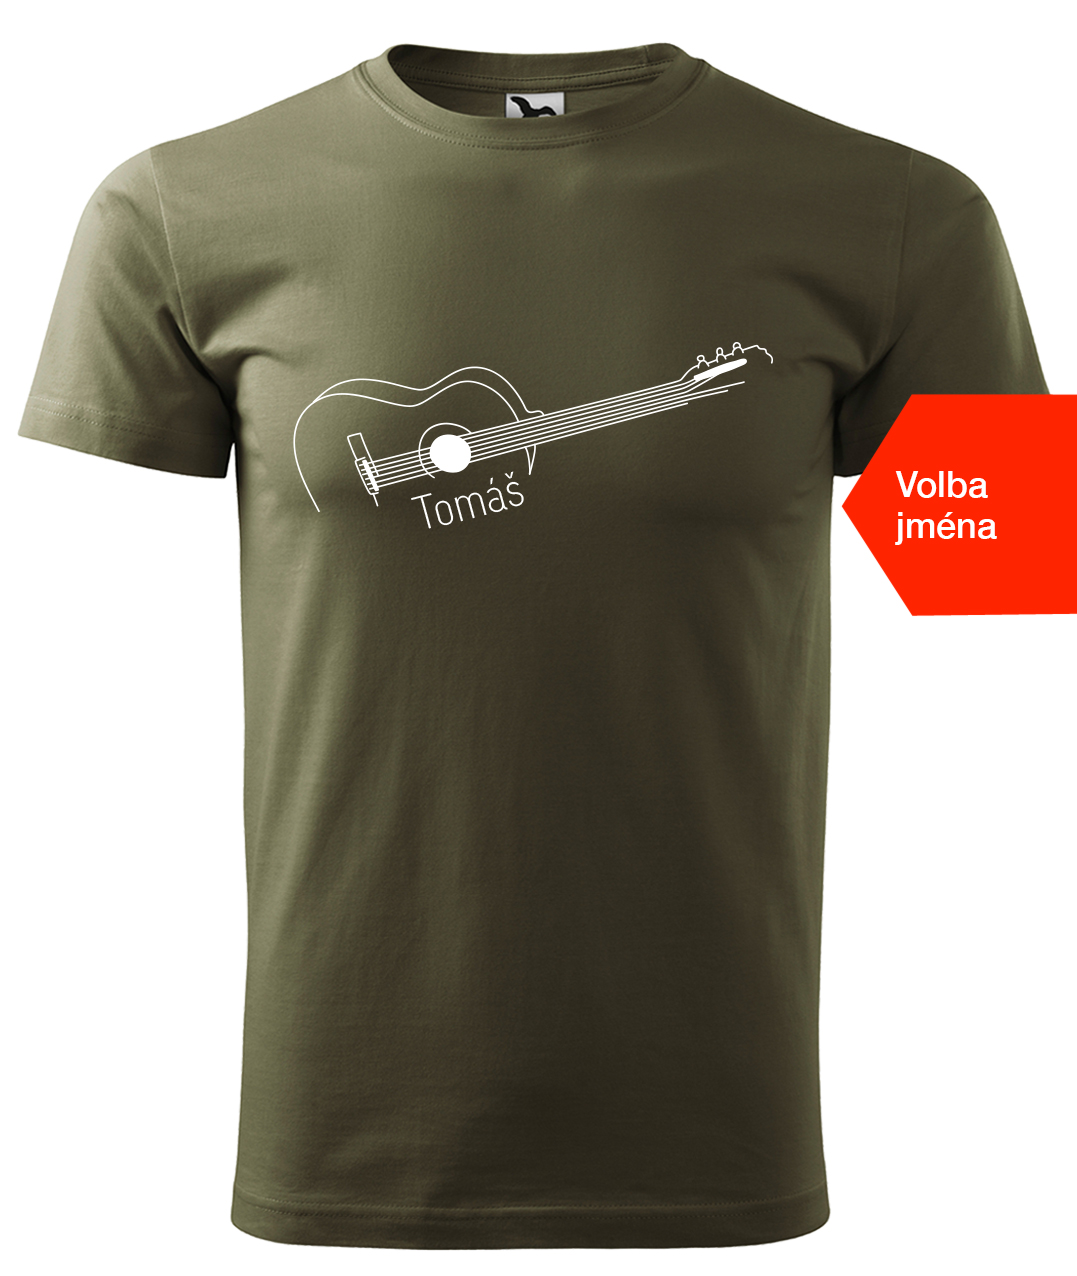 Dětské tričko s kytarou se jménem - Stylizovaná kytara Velikost: 6 let / 122 cm, Barva: Military (69), Délka rukávu: Krátký rukáv